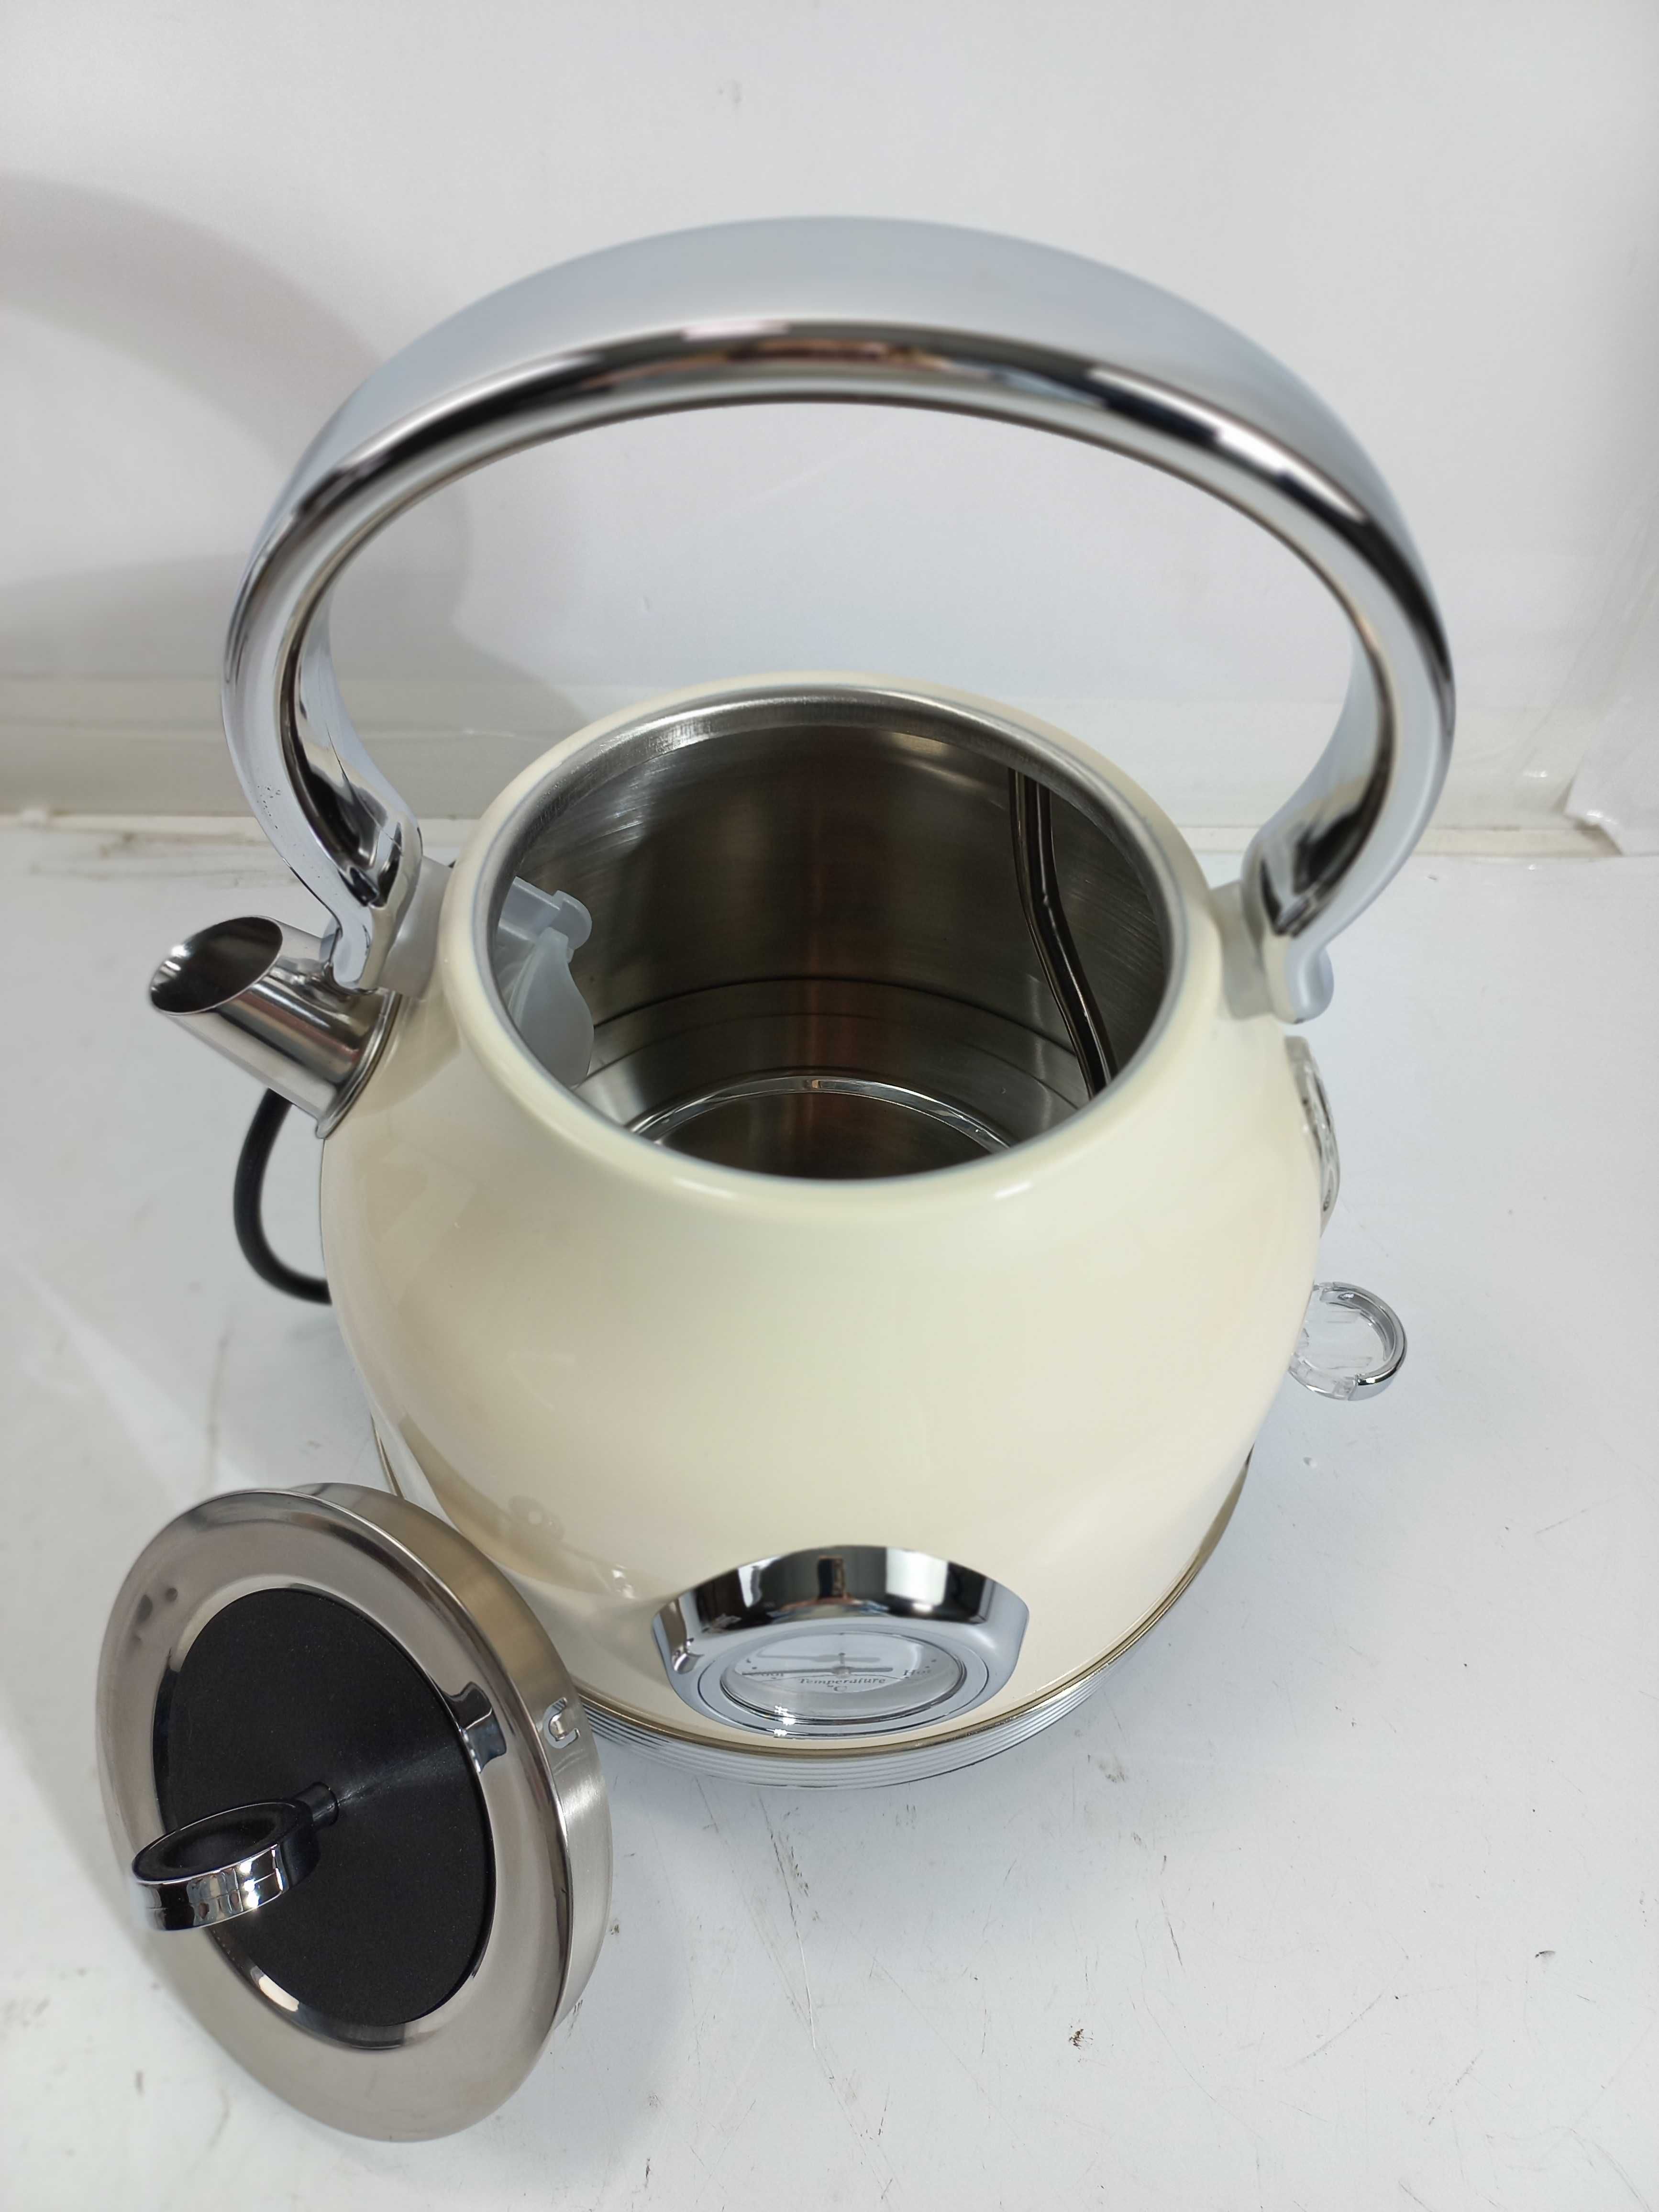 Чайник електричний, молочного кольору, в стилі "Ретро" Zkian BT - K15T